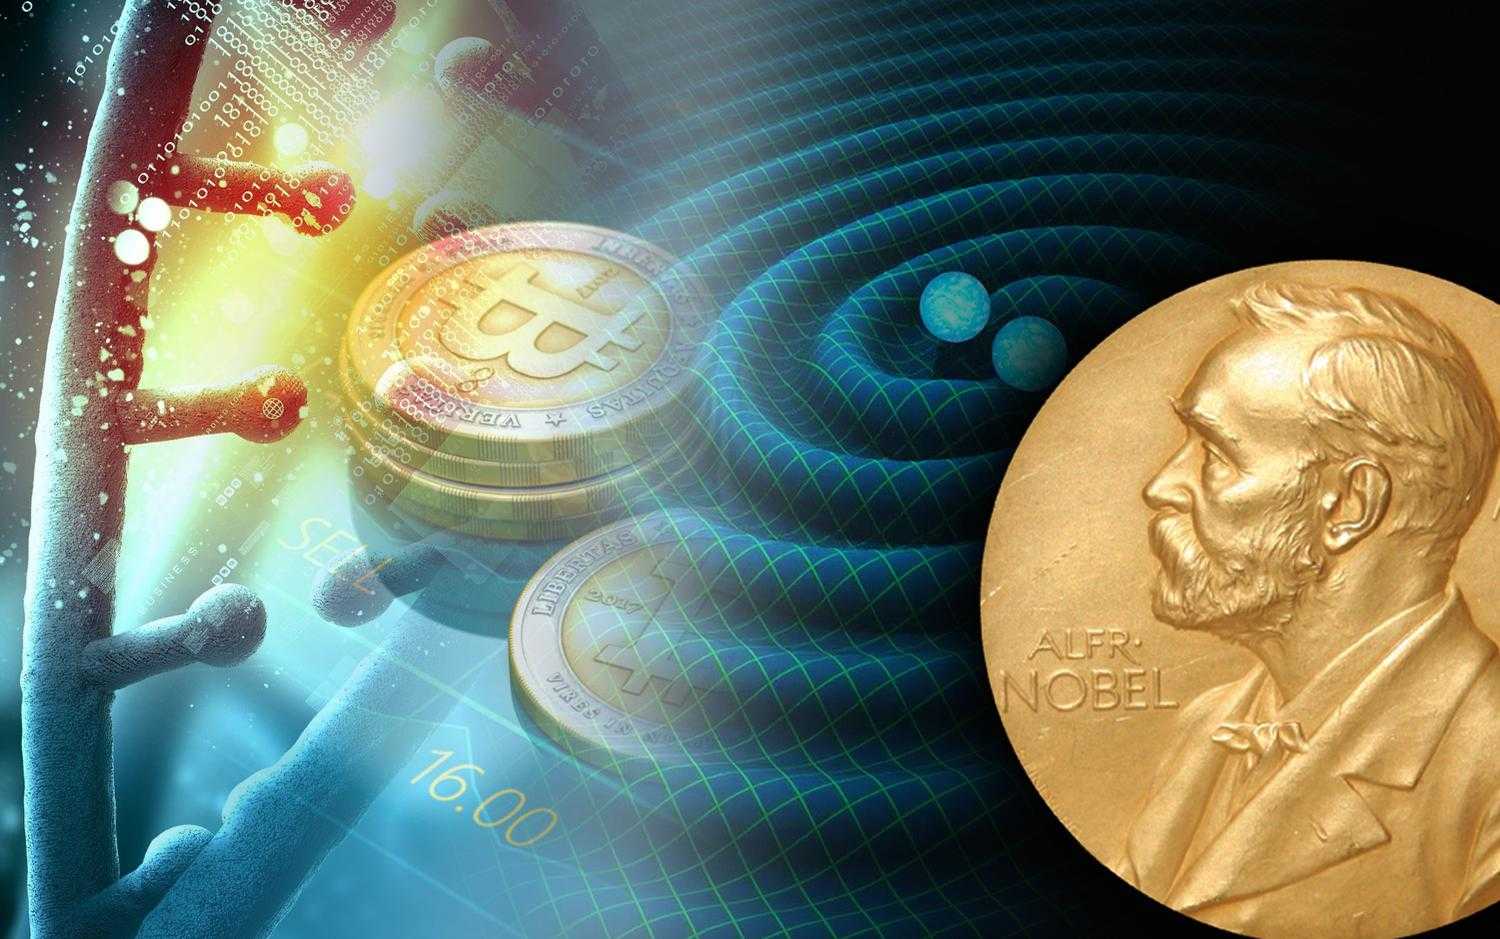 Нобелевский комитет назвал лауреатов премии по физиологии и медицине 2018 года.